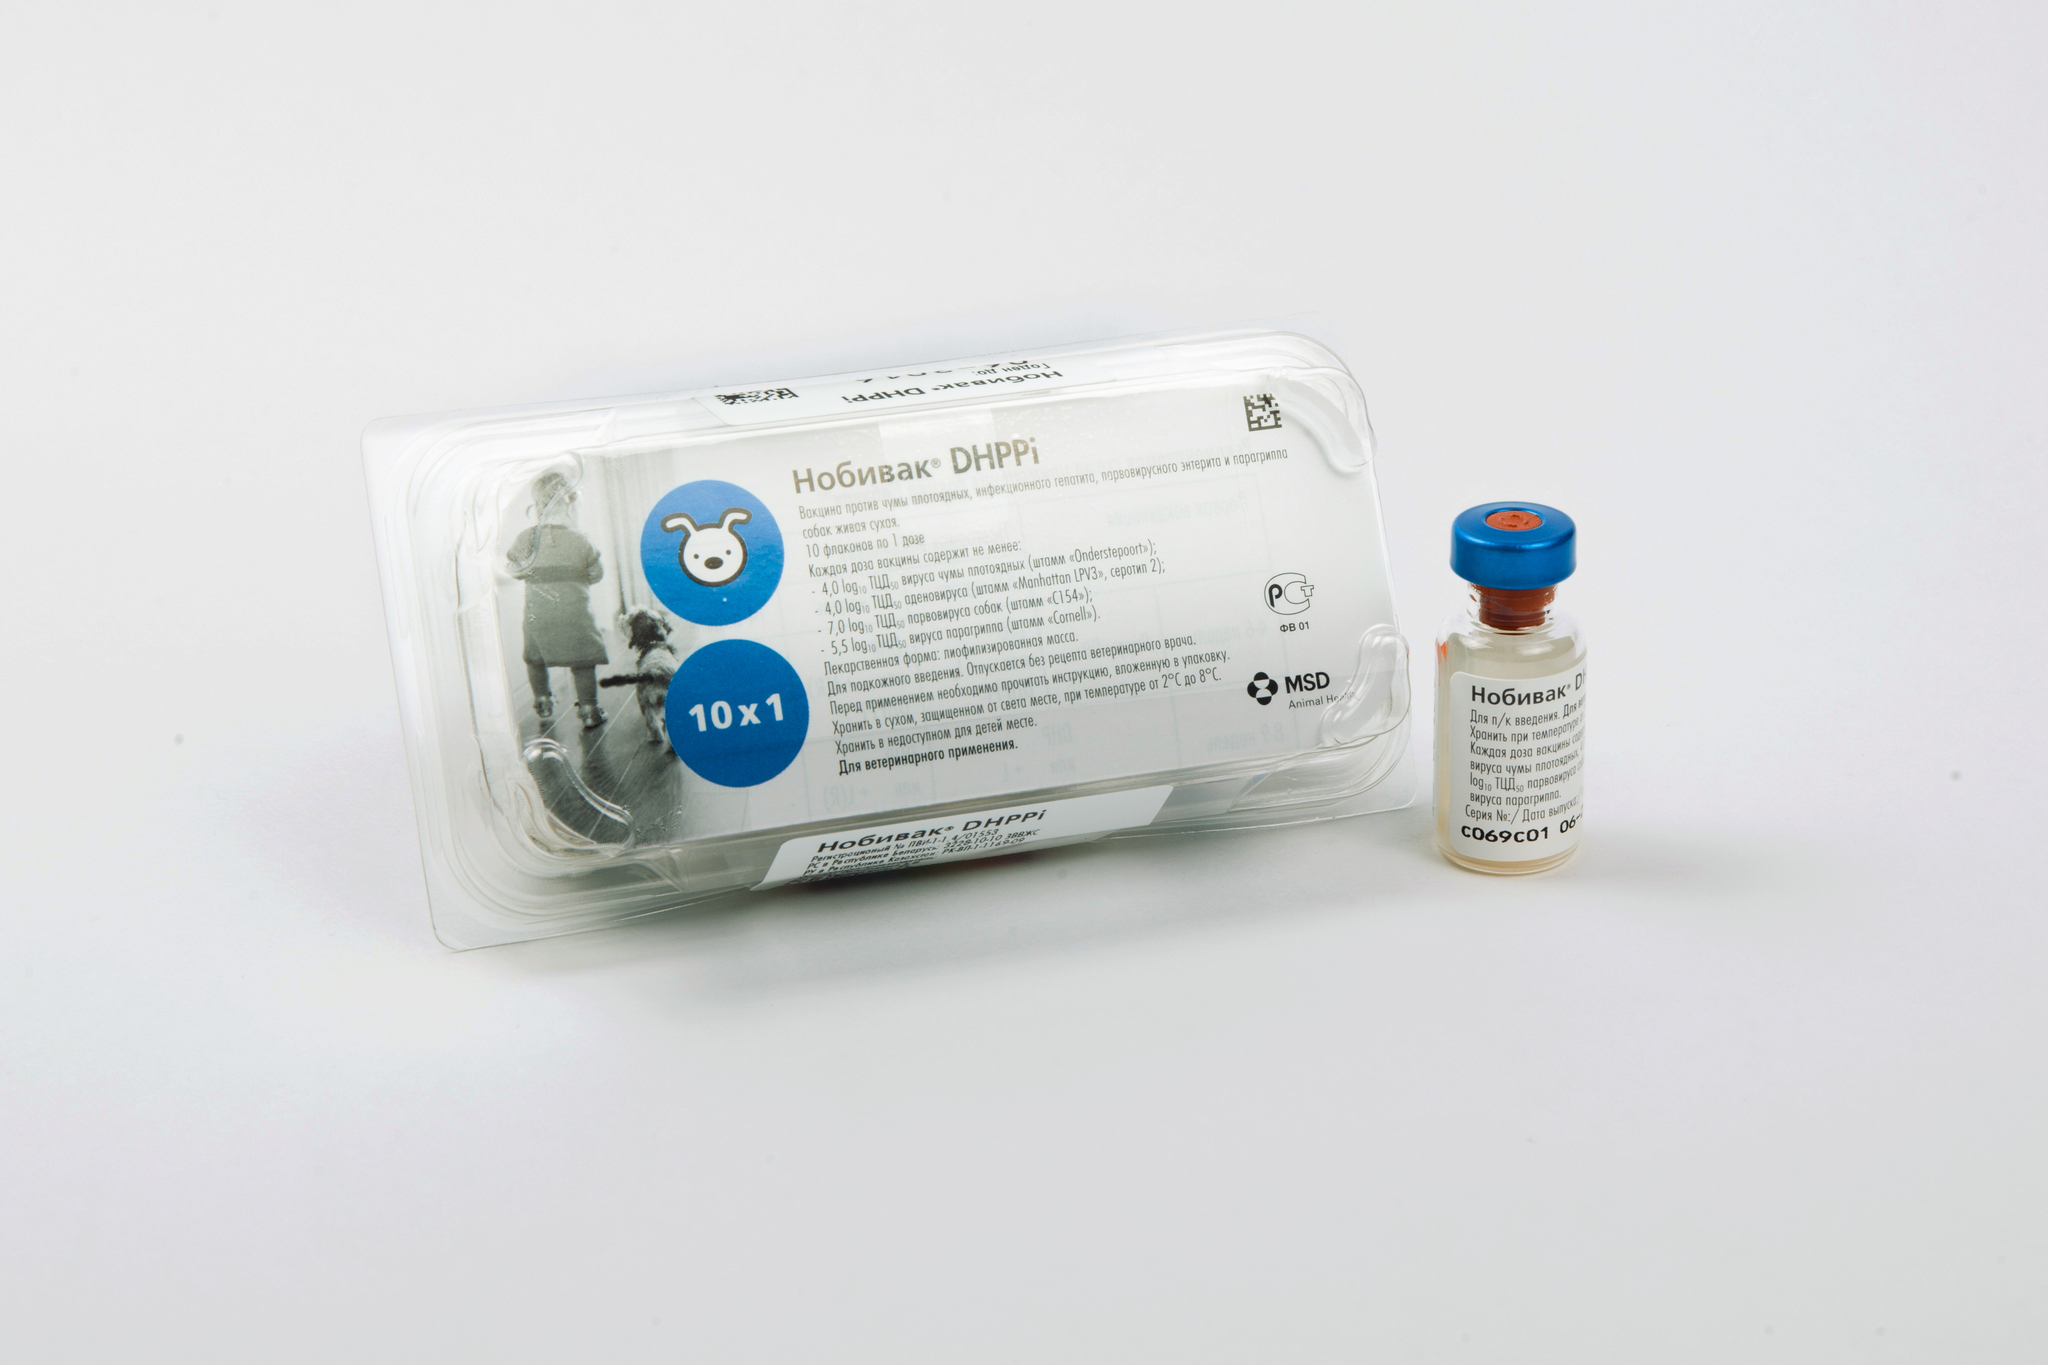 Вакцина Нобивак DHPPI + L, комплект. Нобивак DHPPI 50 доз. Нобивак для собак Биофабрика.